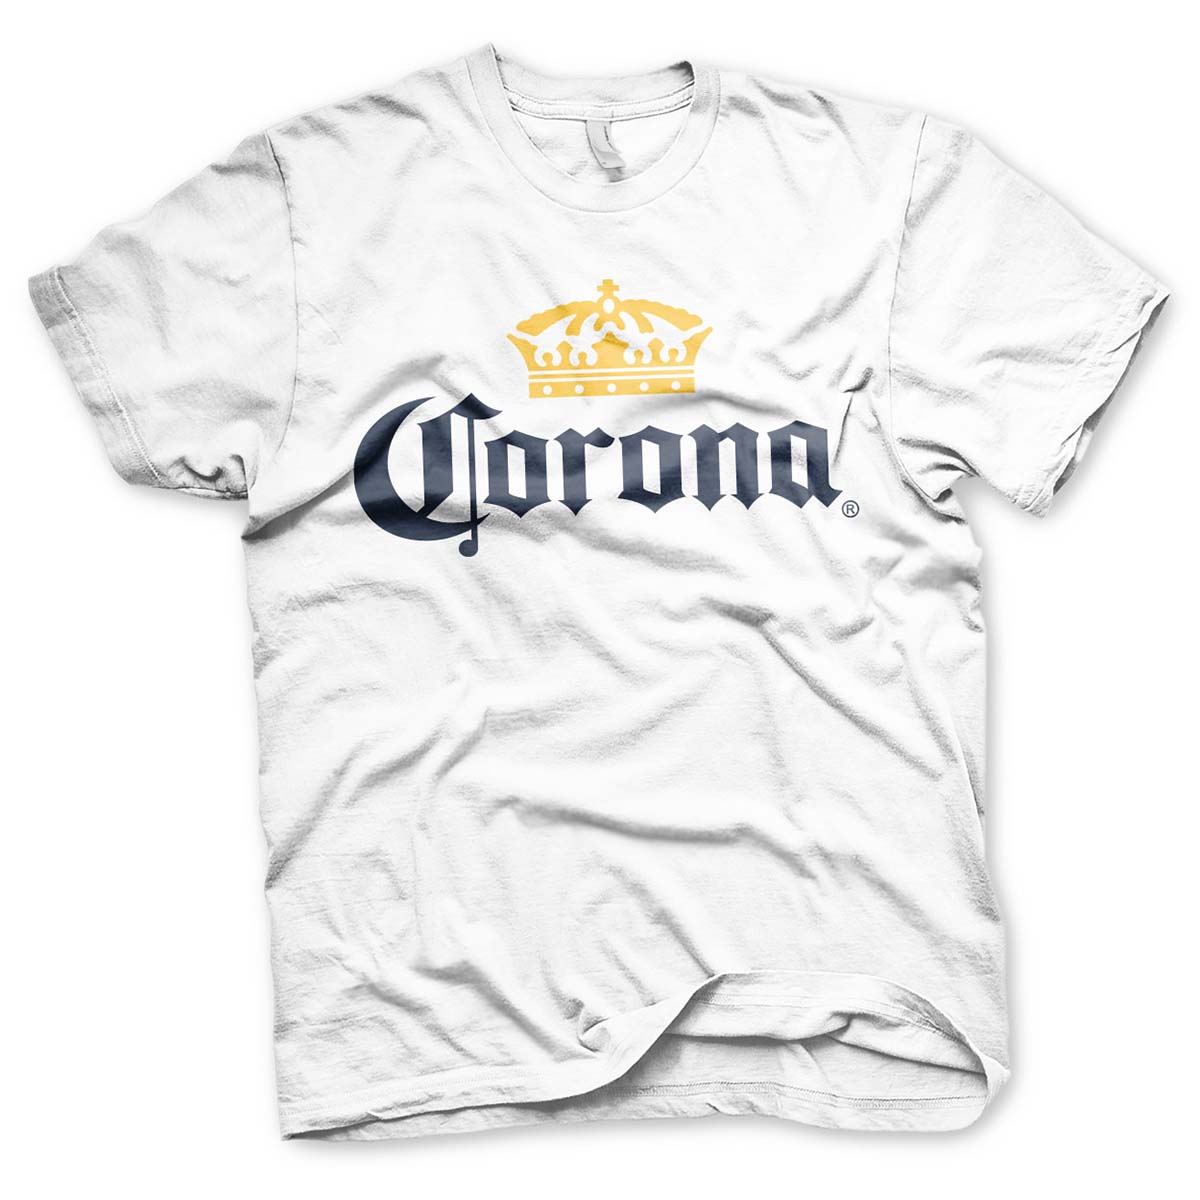 T-shirt, Corona beer XXL